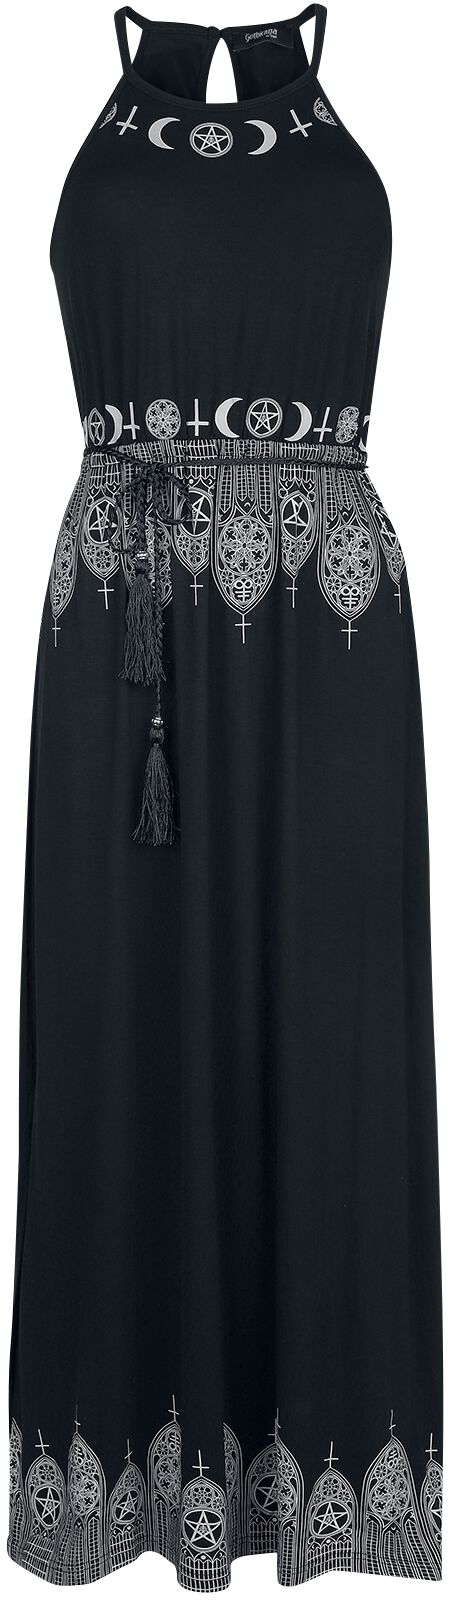 Robe longue Gothic de Gothicana by EMP - Robe Longue Noire Avec Imprimé & Ceinture Fine - S à 5XL - 